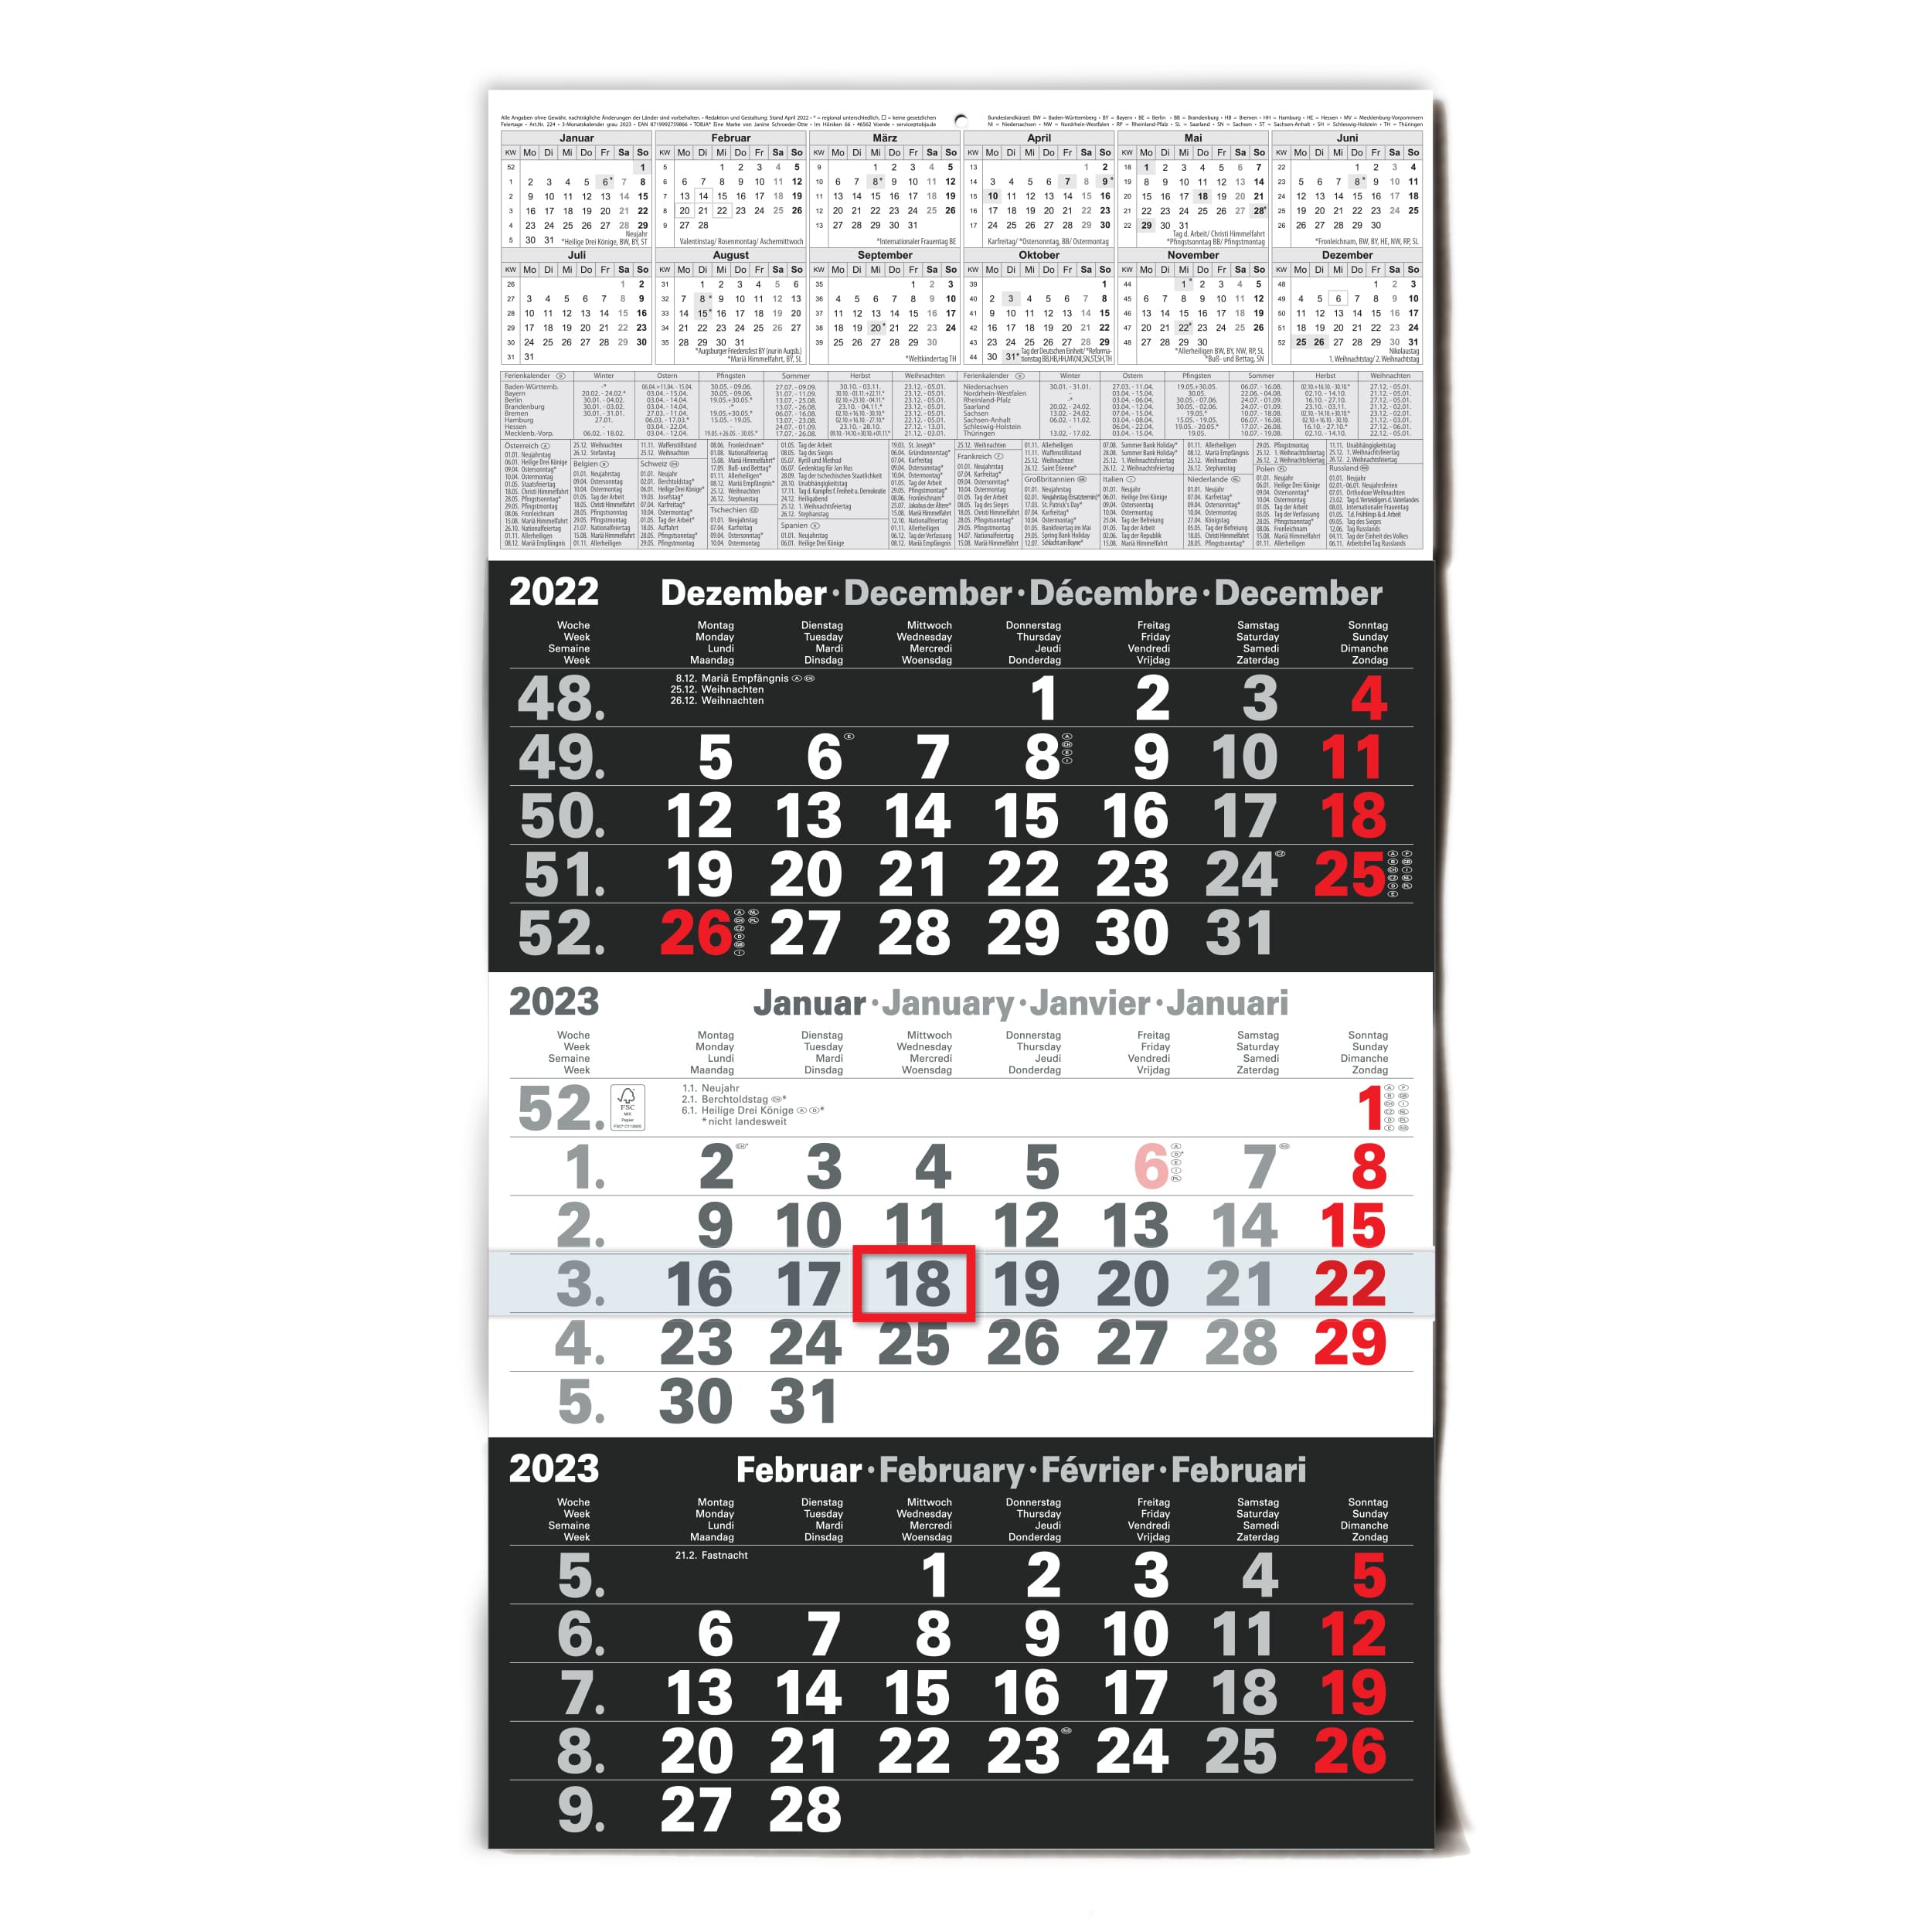 2023 Tischkalender Dreimonatskalender Edelstahlhalter mit Kalenderblätter 2022 